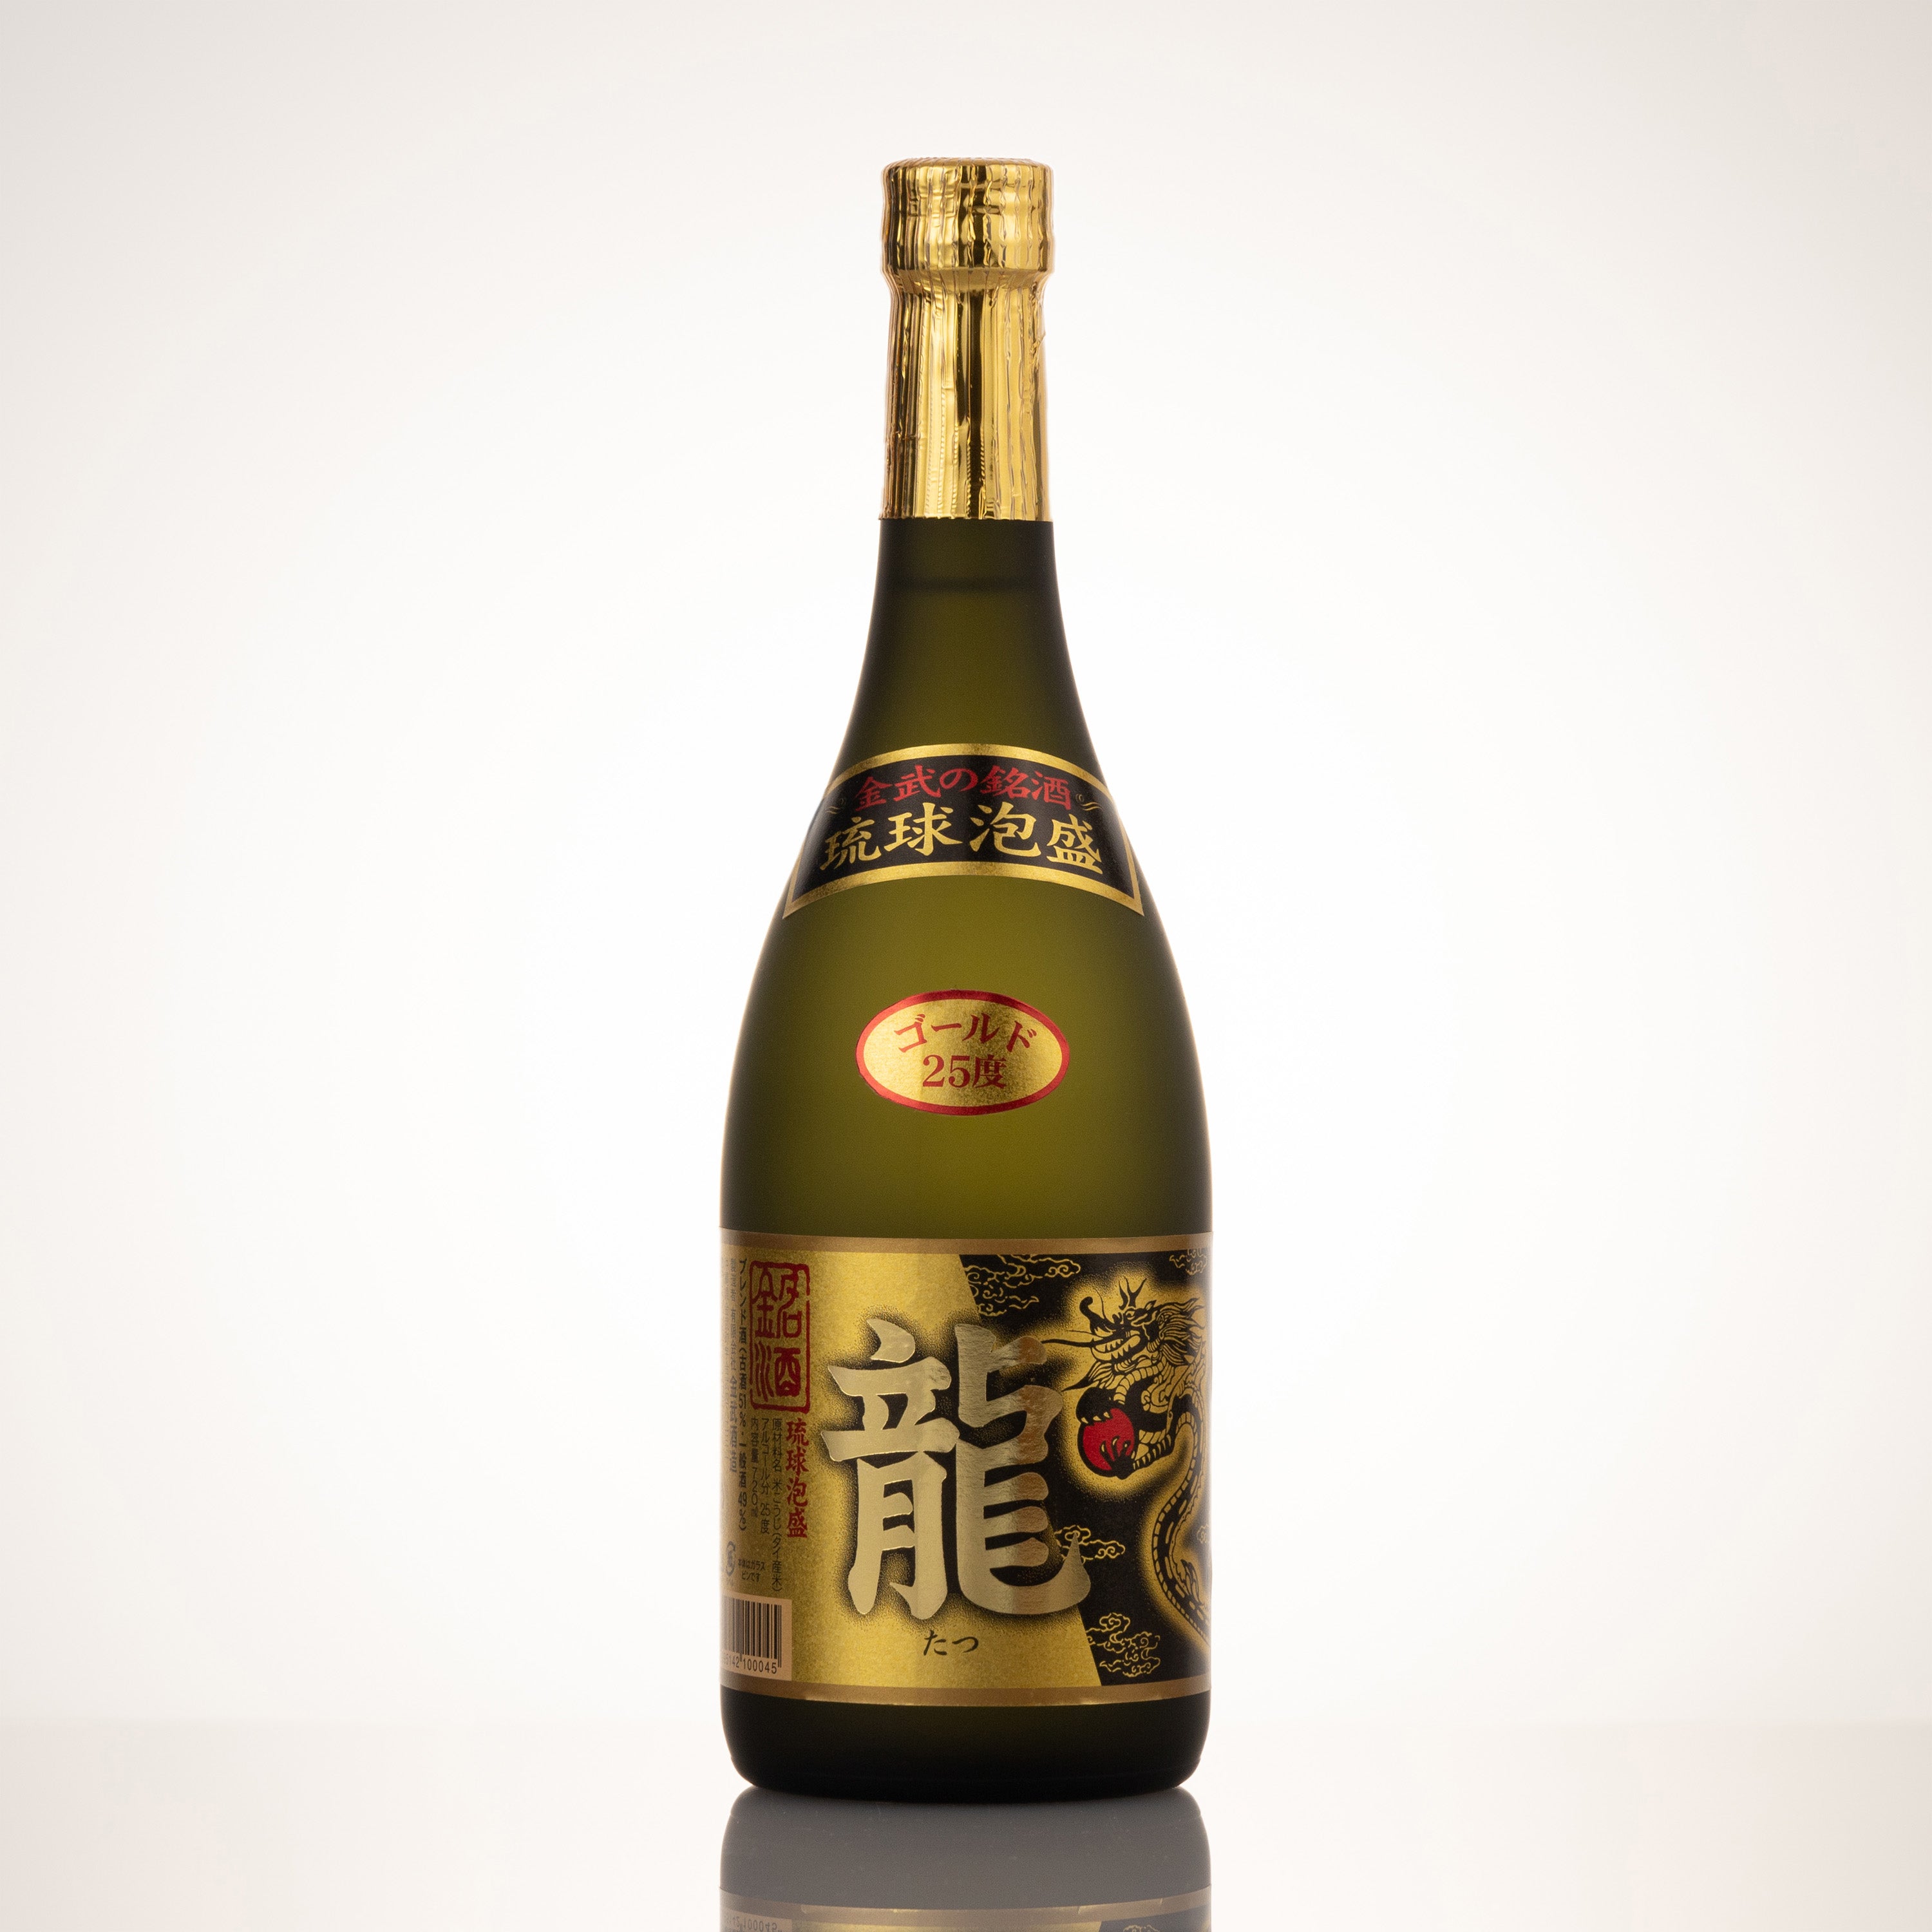 龍ゴールド 25度 ❘泡盛初心者にオススメのブレンド酒 – shimmer online